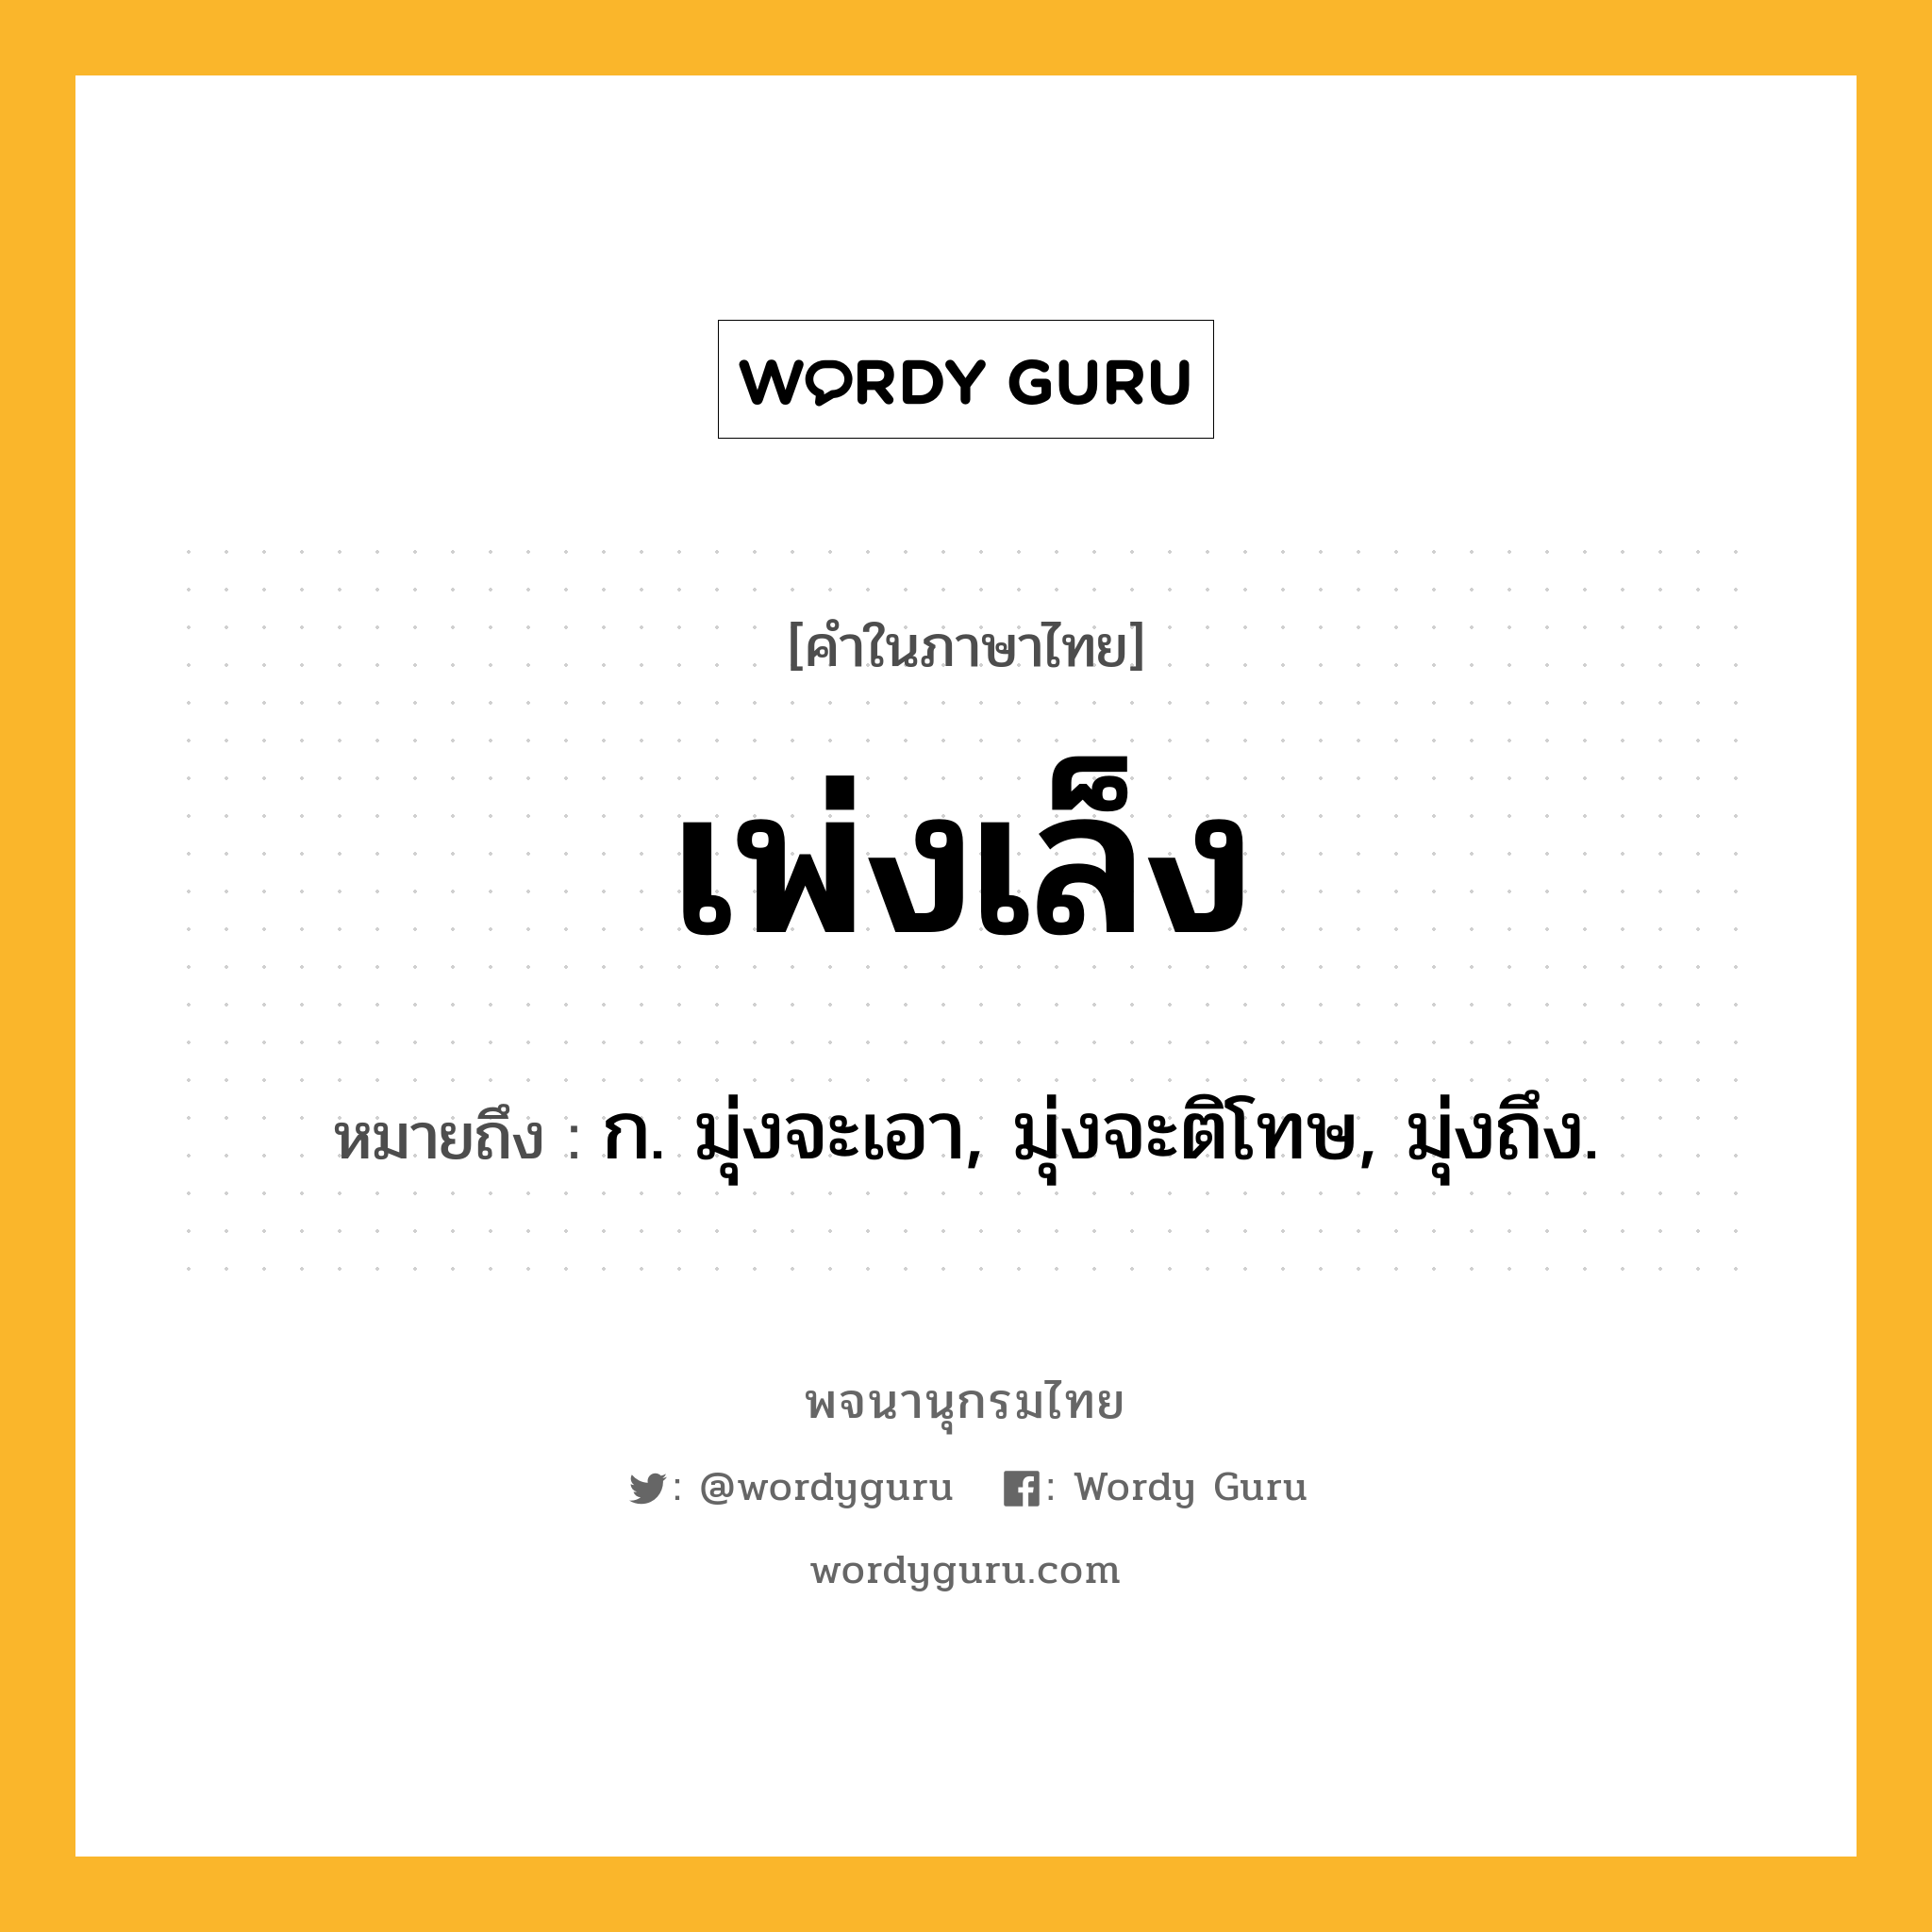 เพ่งเล็ง ความหมาย หมายถึงอะไร?, คำในภาษาไทย เพ่งเล็ง หมายถึง ก. มุ่งจะเอา, มุ่งจะติโทษ, มุ่งถึง.